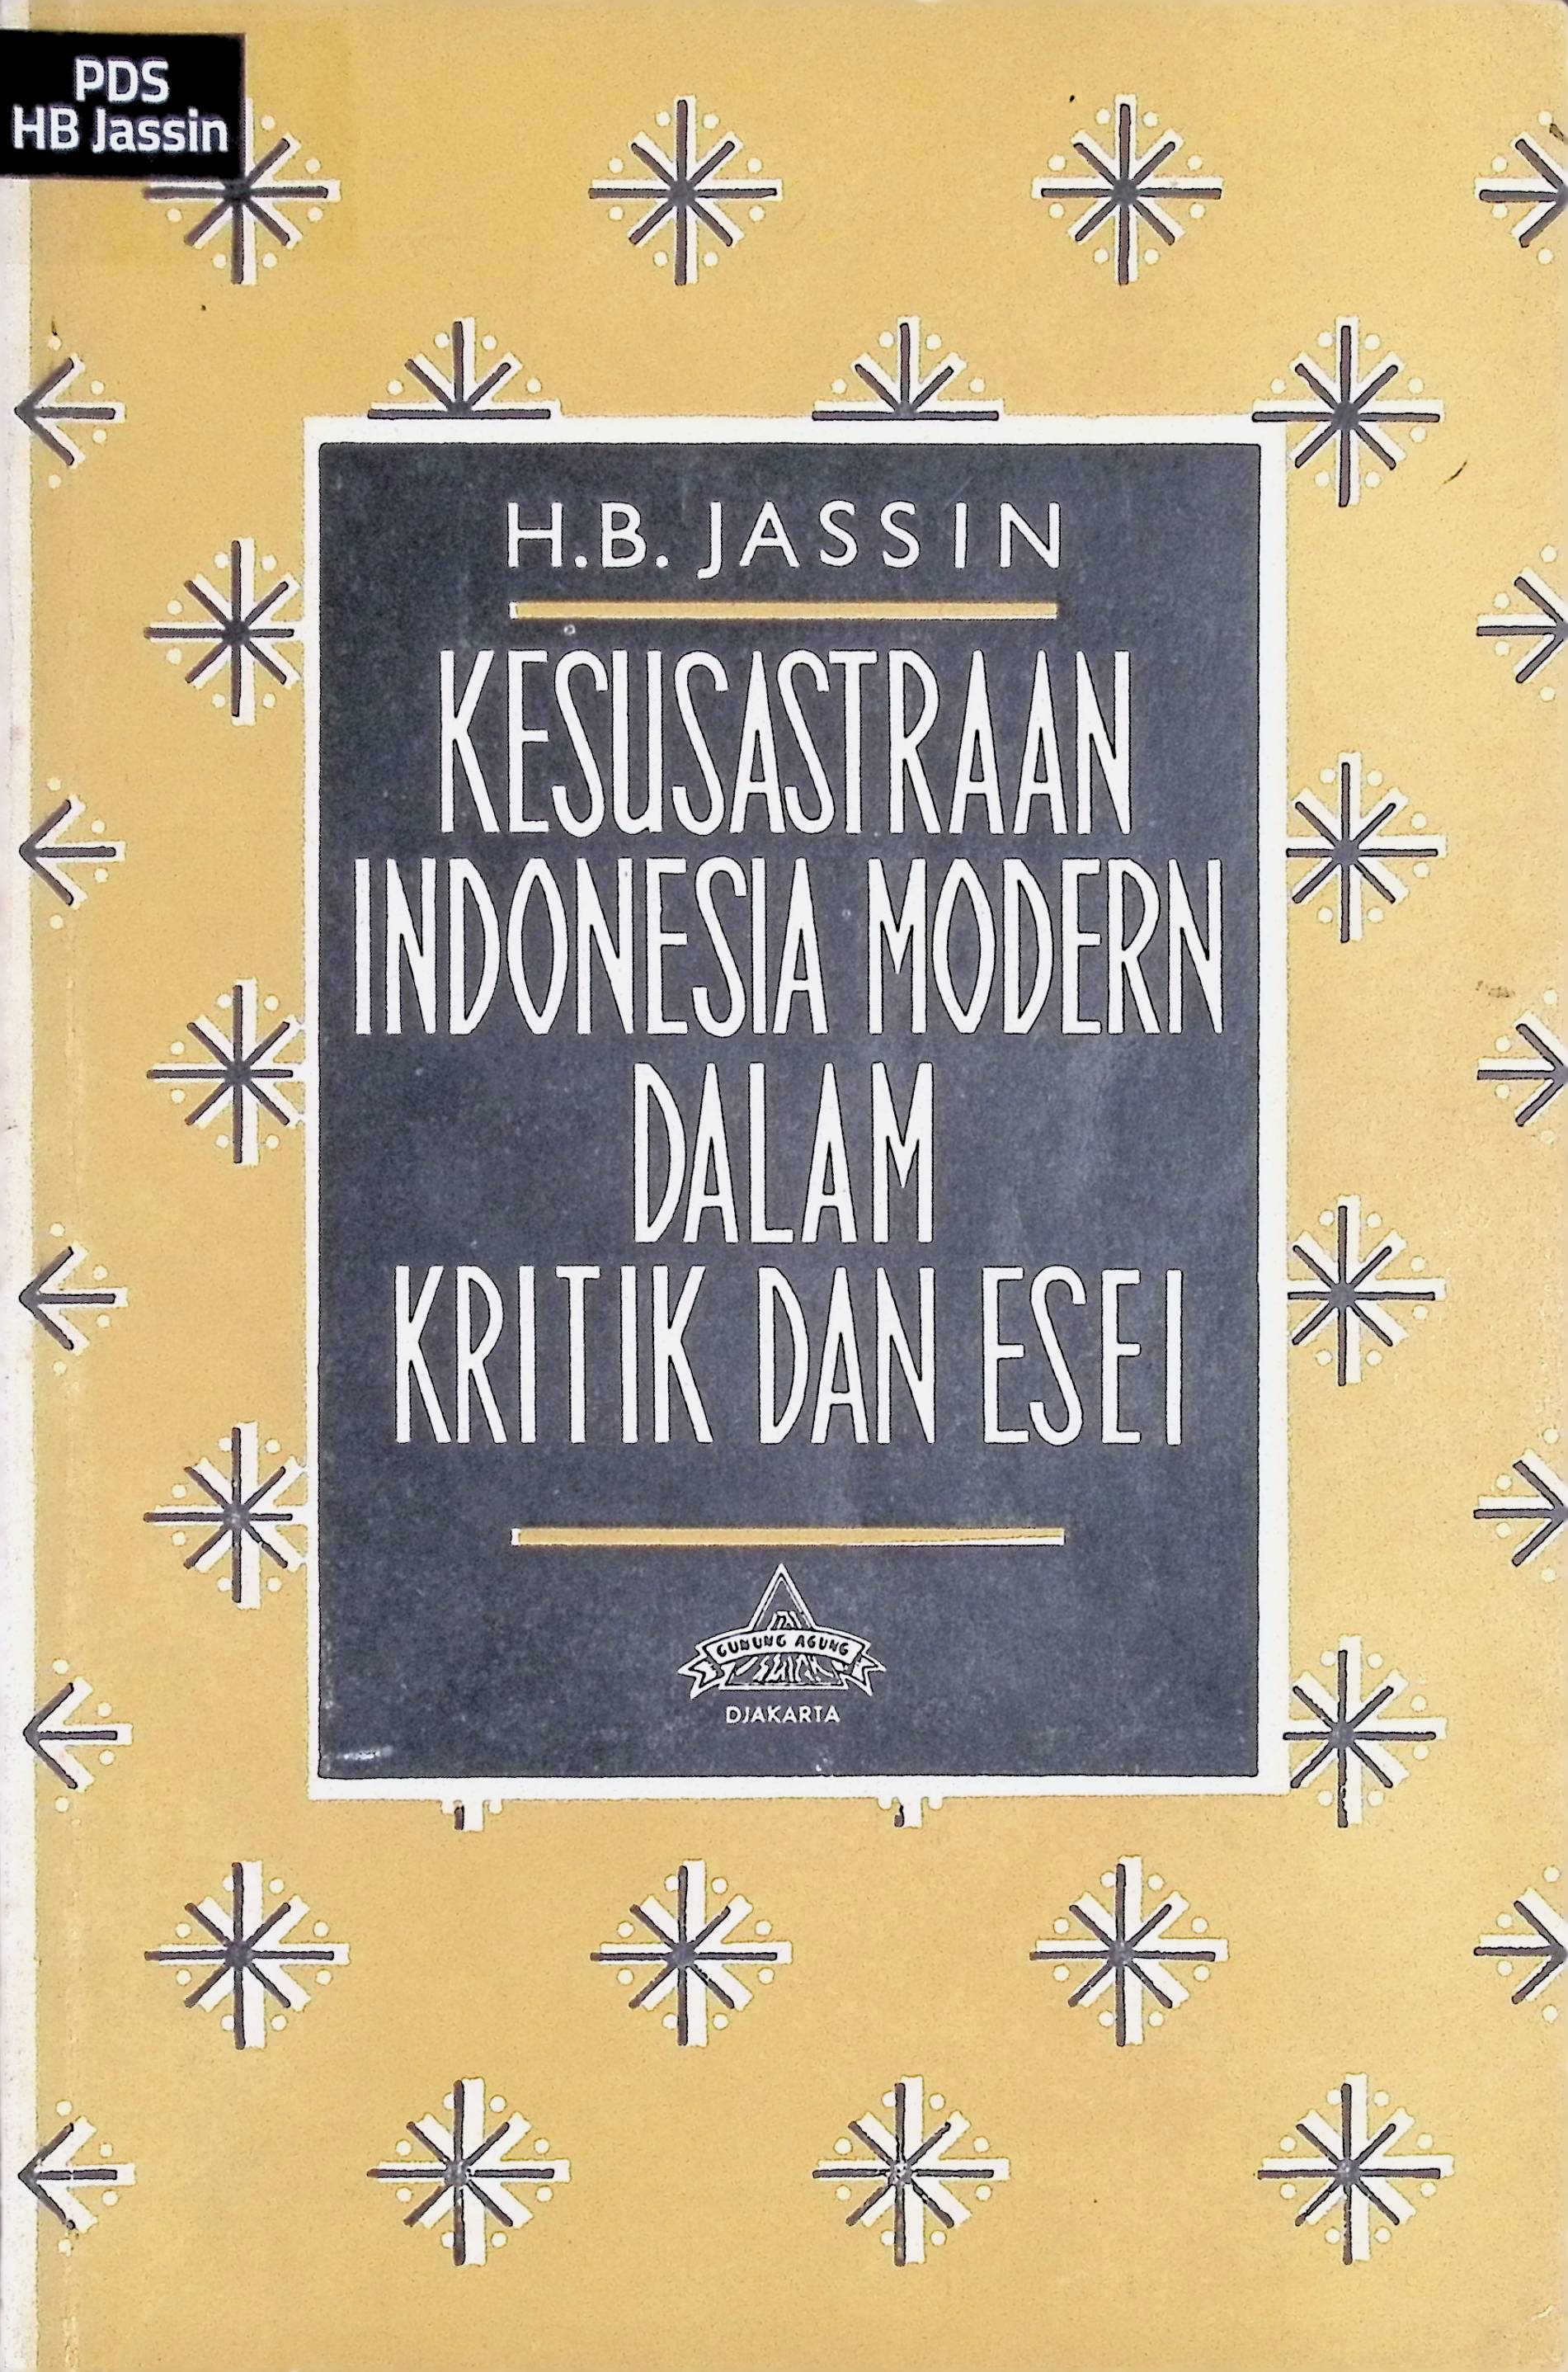 Kesusastraan Indonesia Modern dalam Kritik dan Esei III